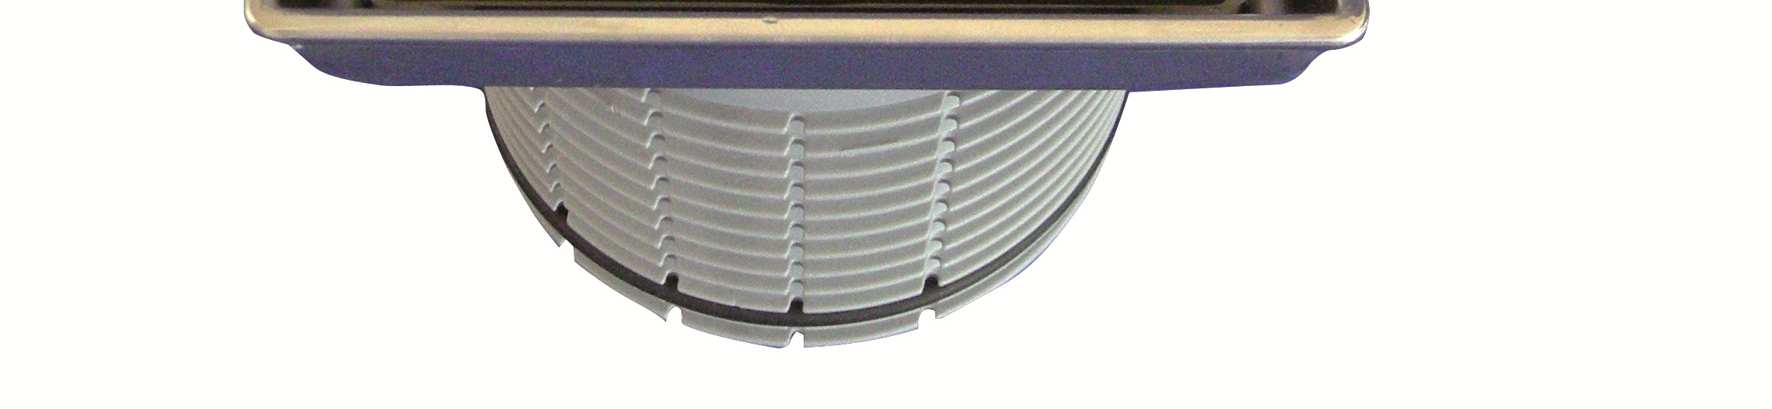 Informace o produktu č. 3 / 2012 Nové v HL HL3020 Nástavec pro vlepení dlažby Jako rozšíření výrobního programu podlahových vpustí s nástavci o ø110mm (např.